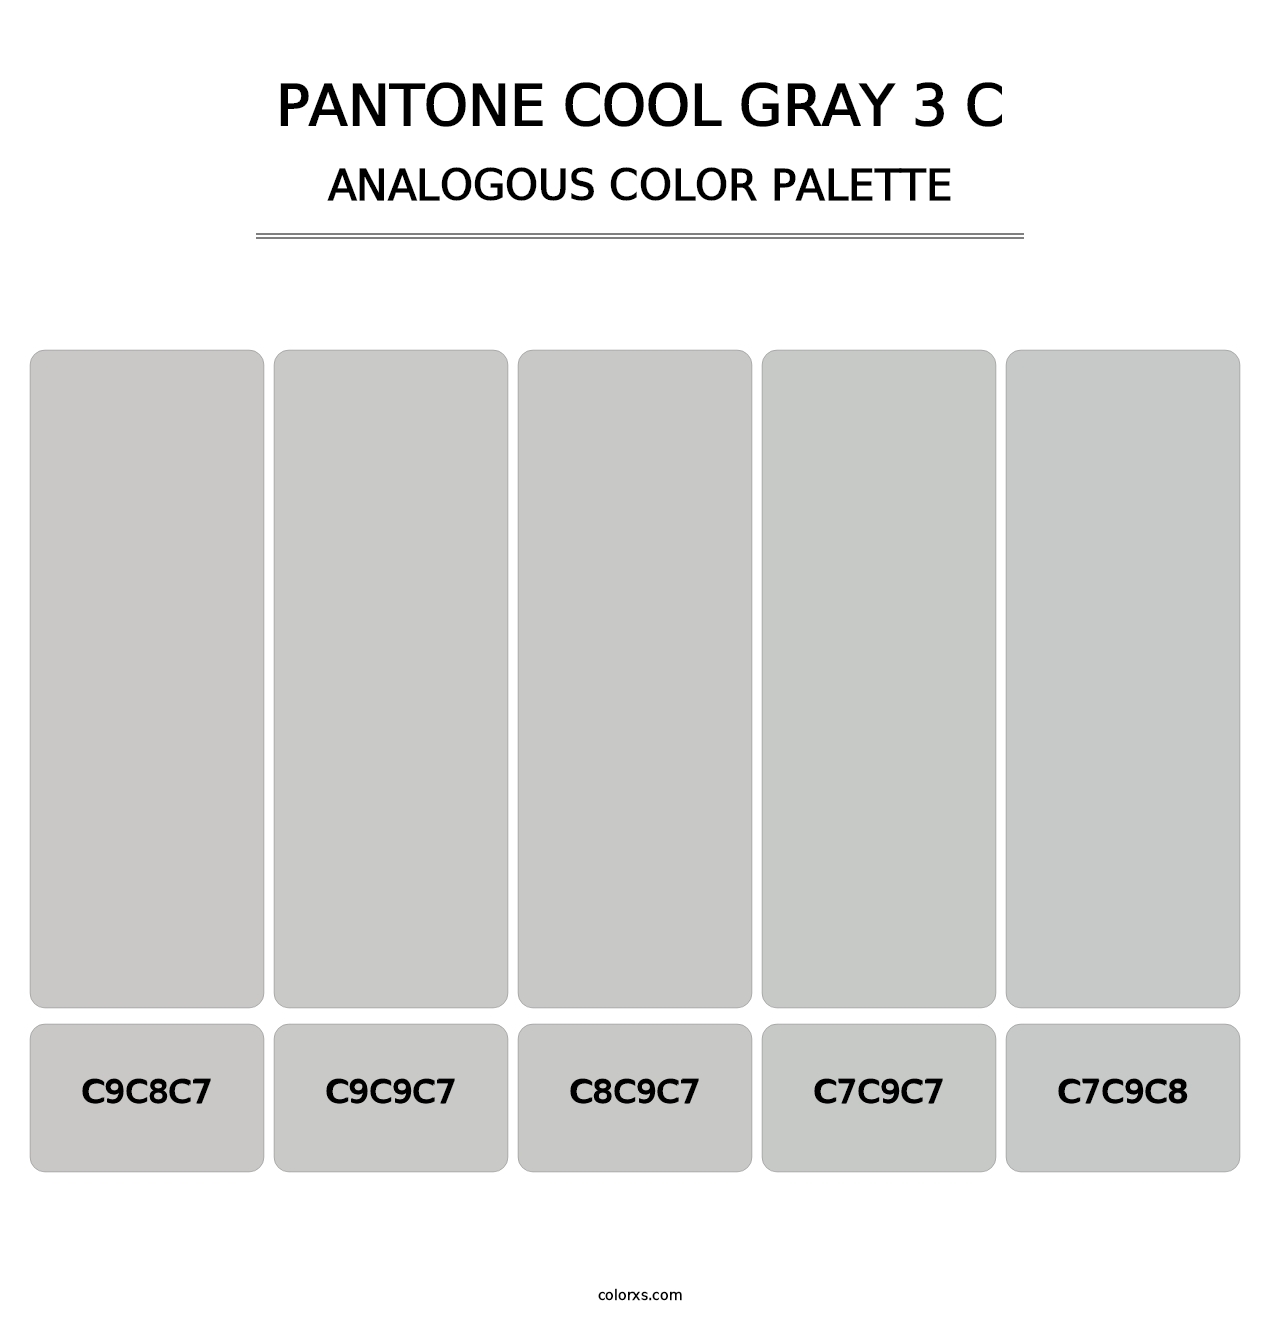 PANTONE Cool Gray 3 C - Analogous Color Palette